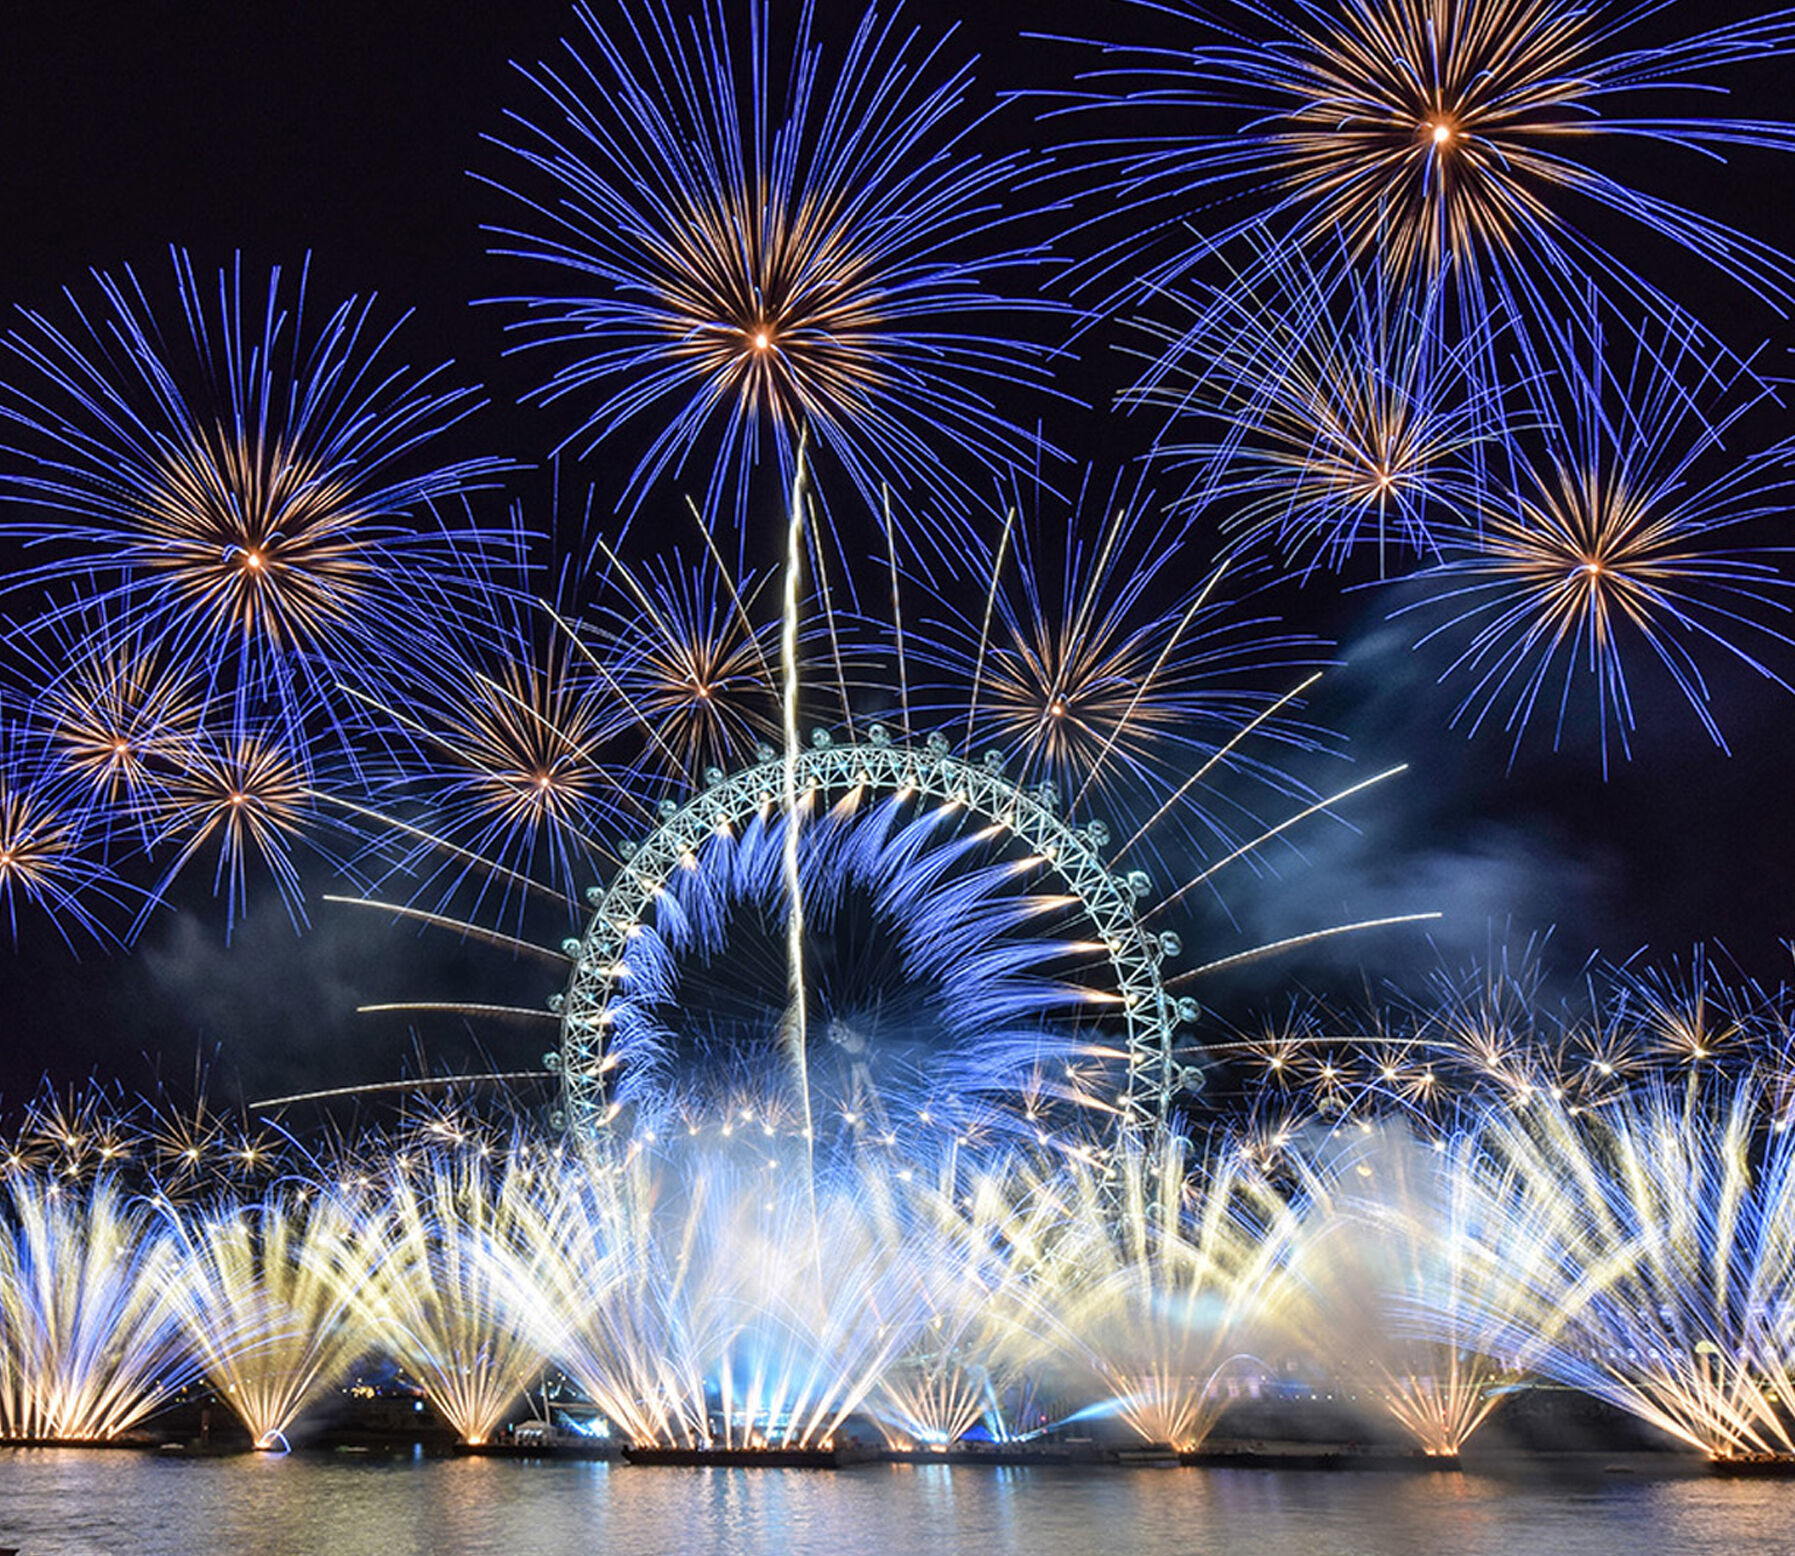 London's NYE Fireworks